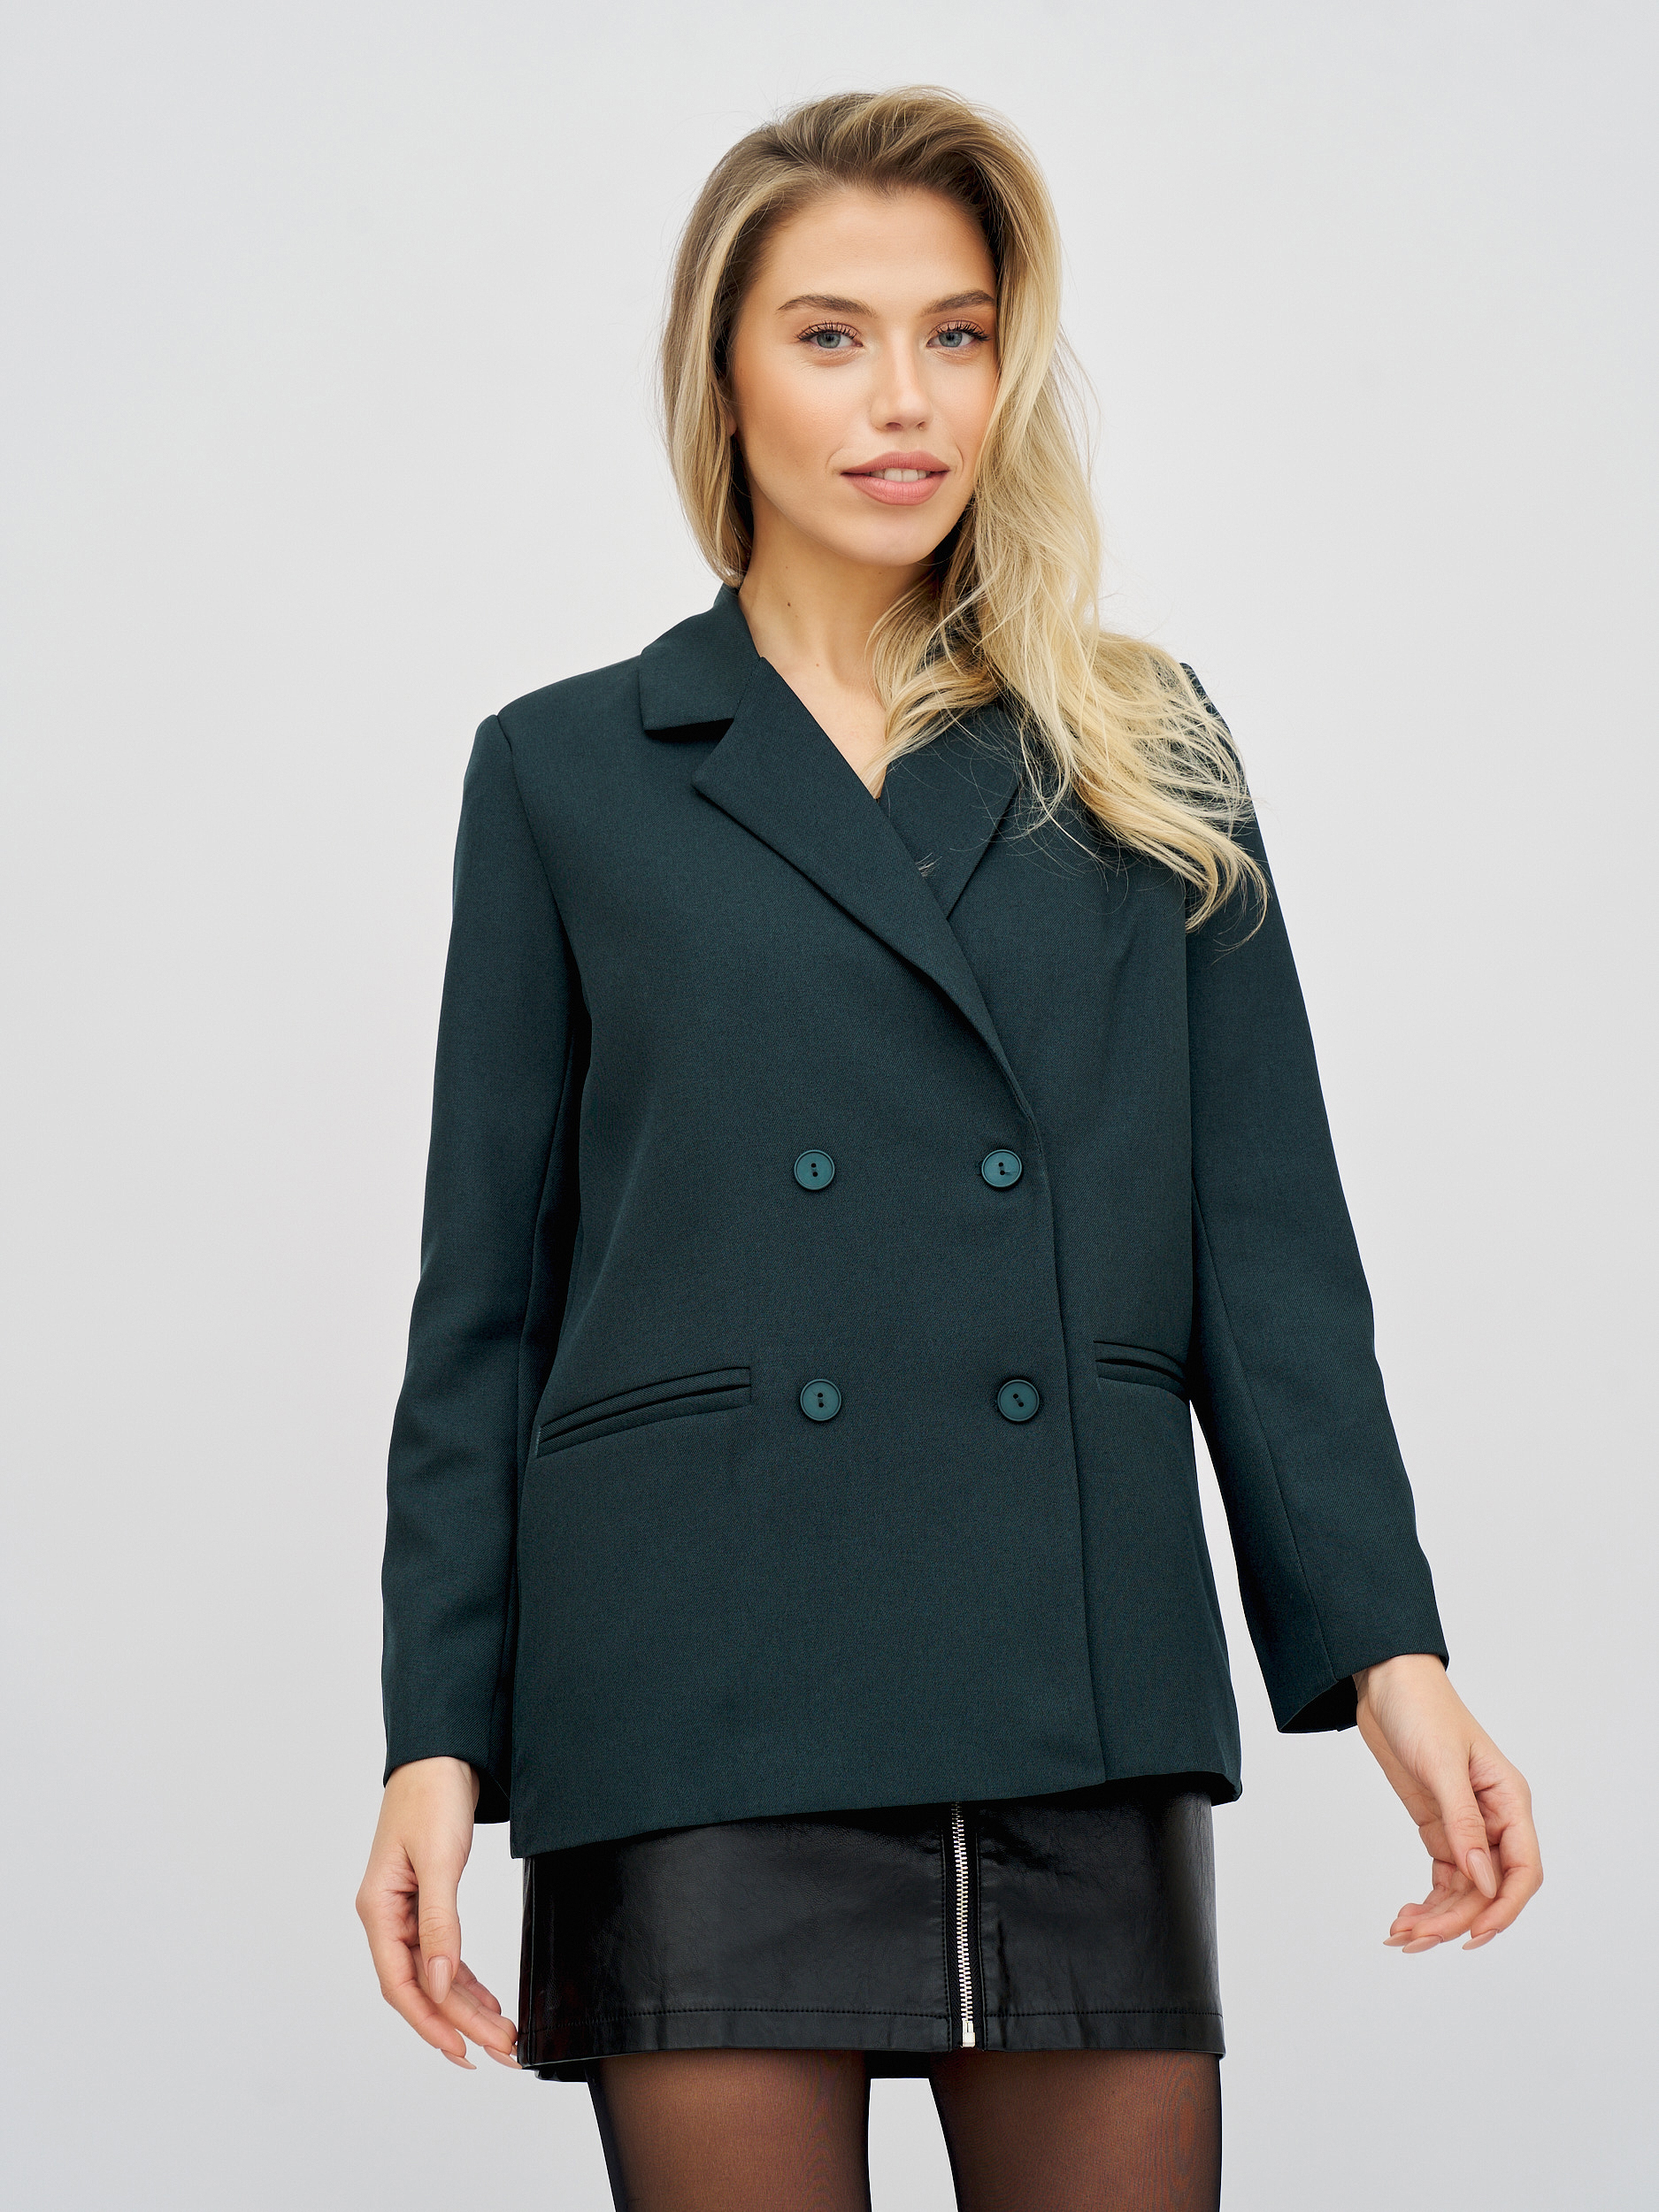 Пиджак женский Olya Stoff OS16025 зеленый 46 RU